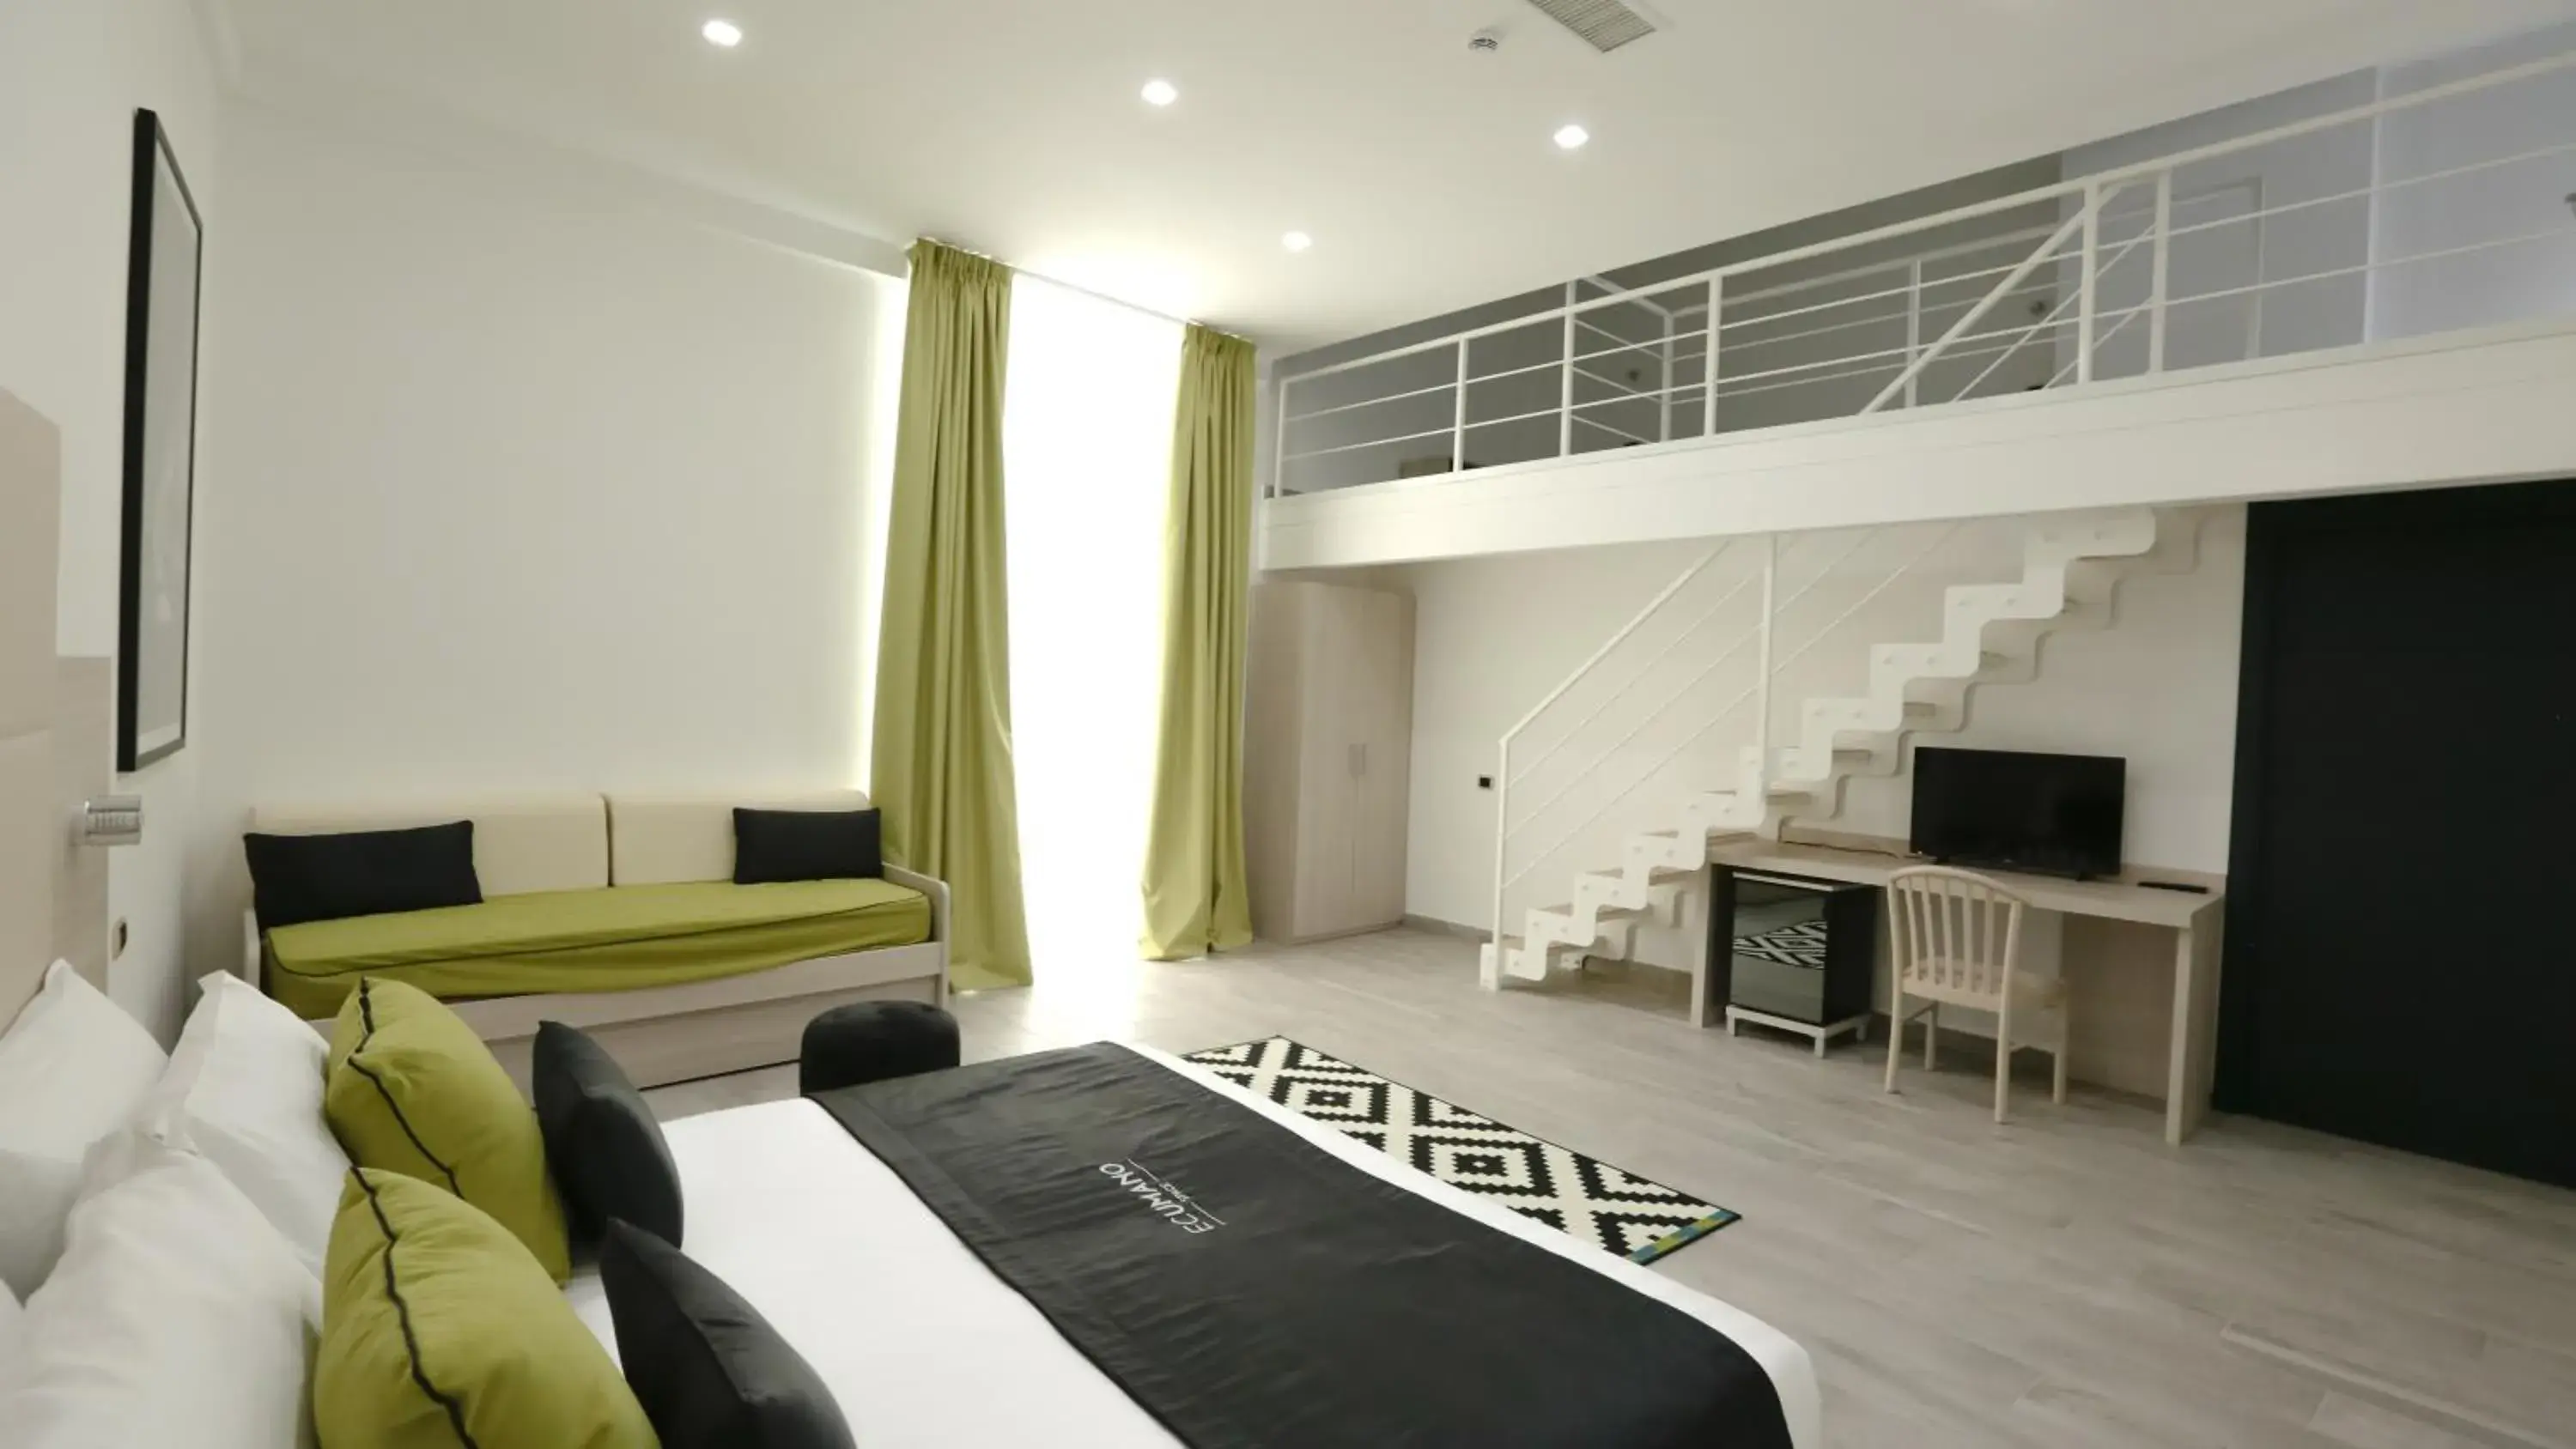 Bedroom in Ecumano Space